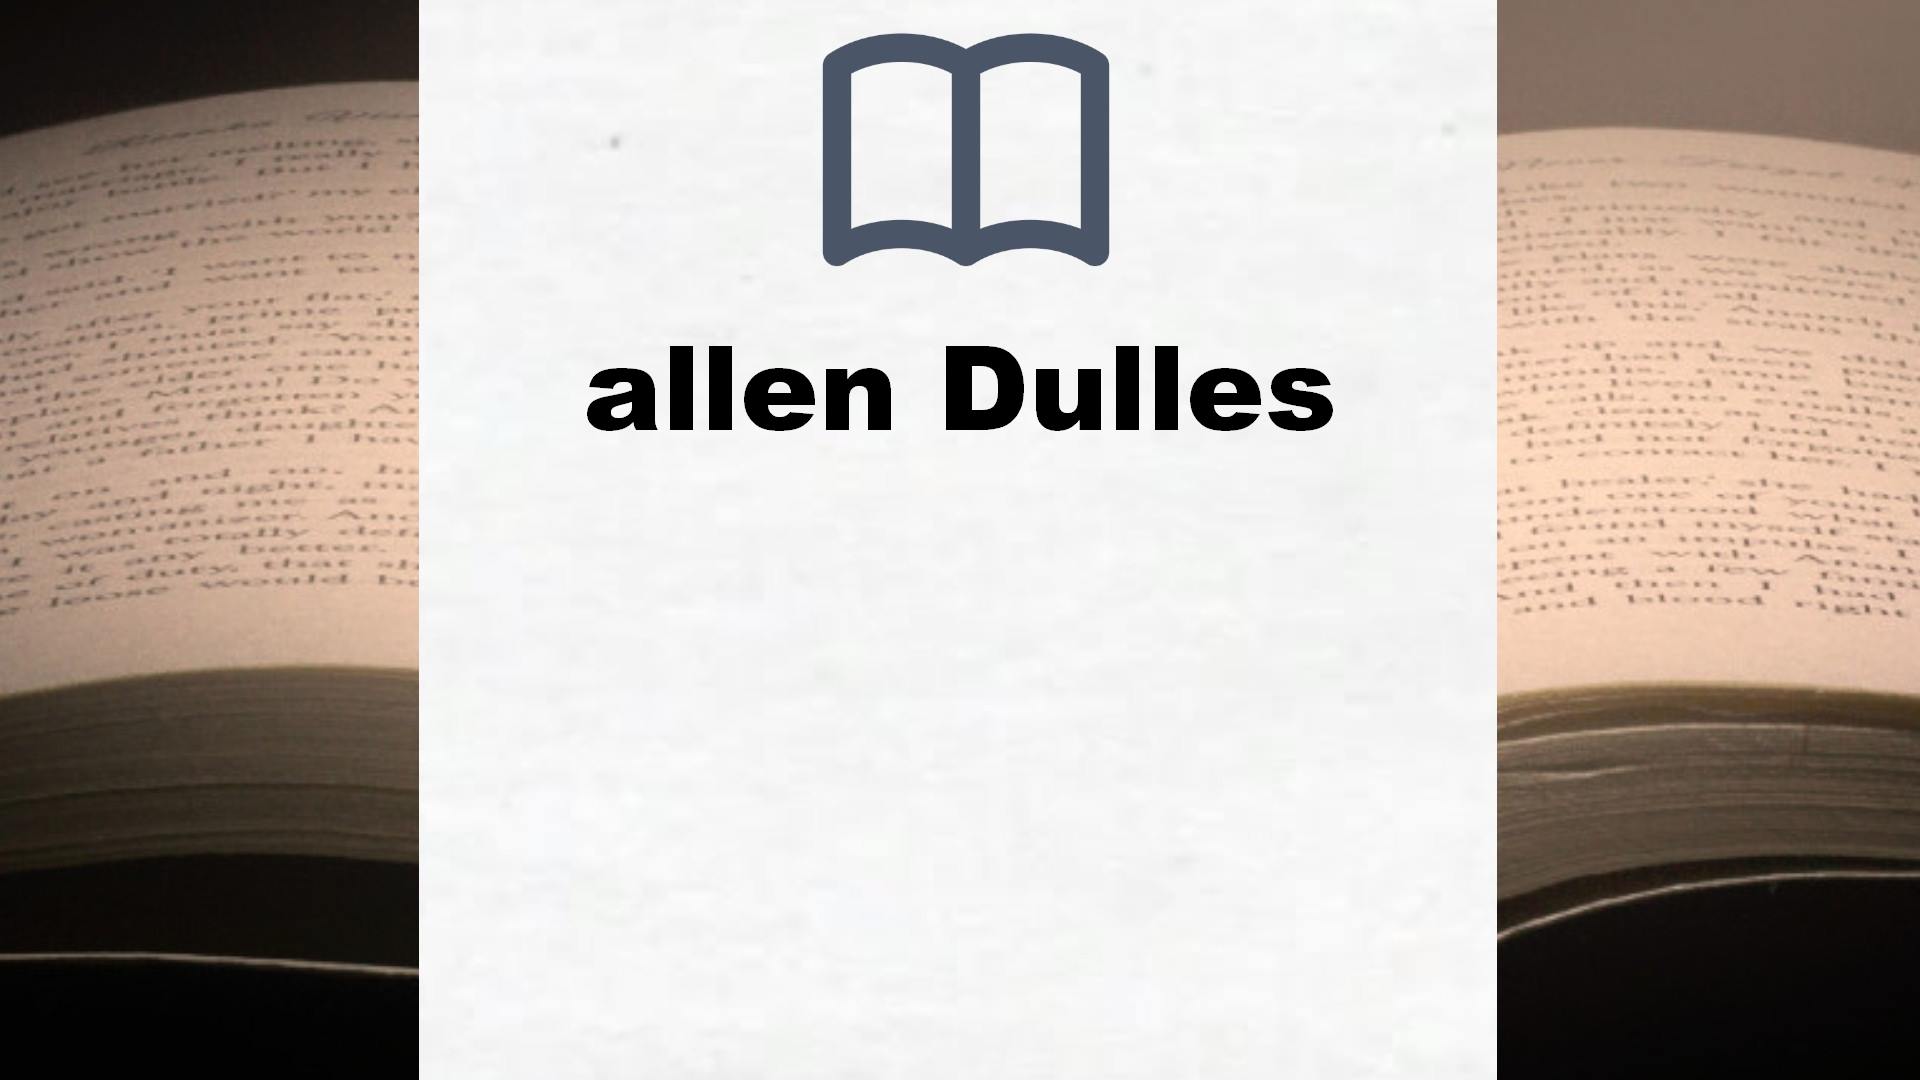 Bücher über allen Dulles